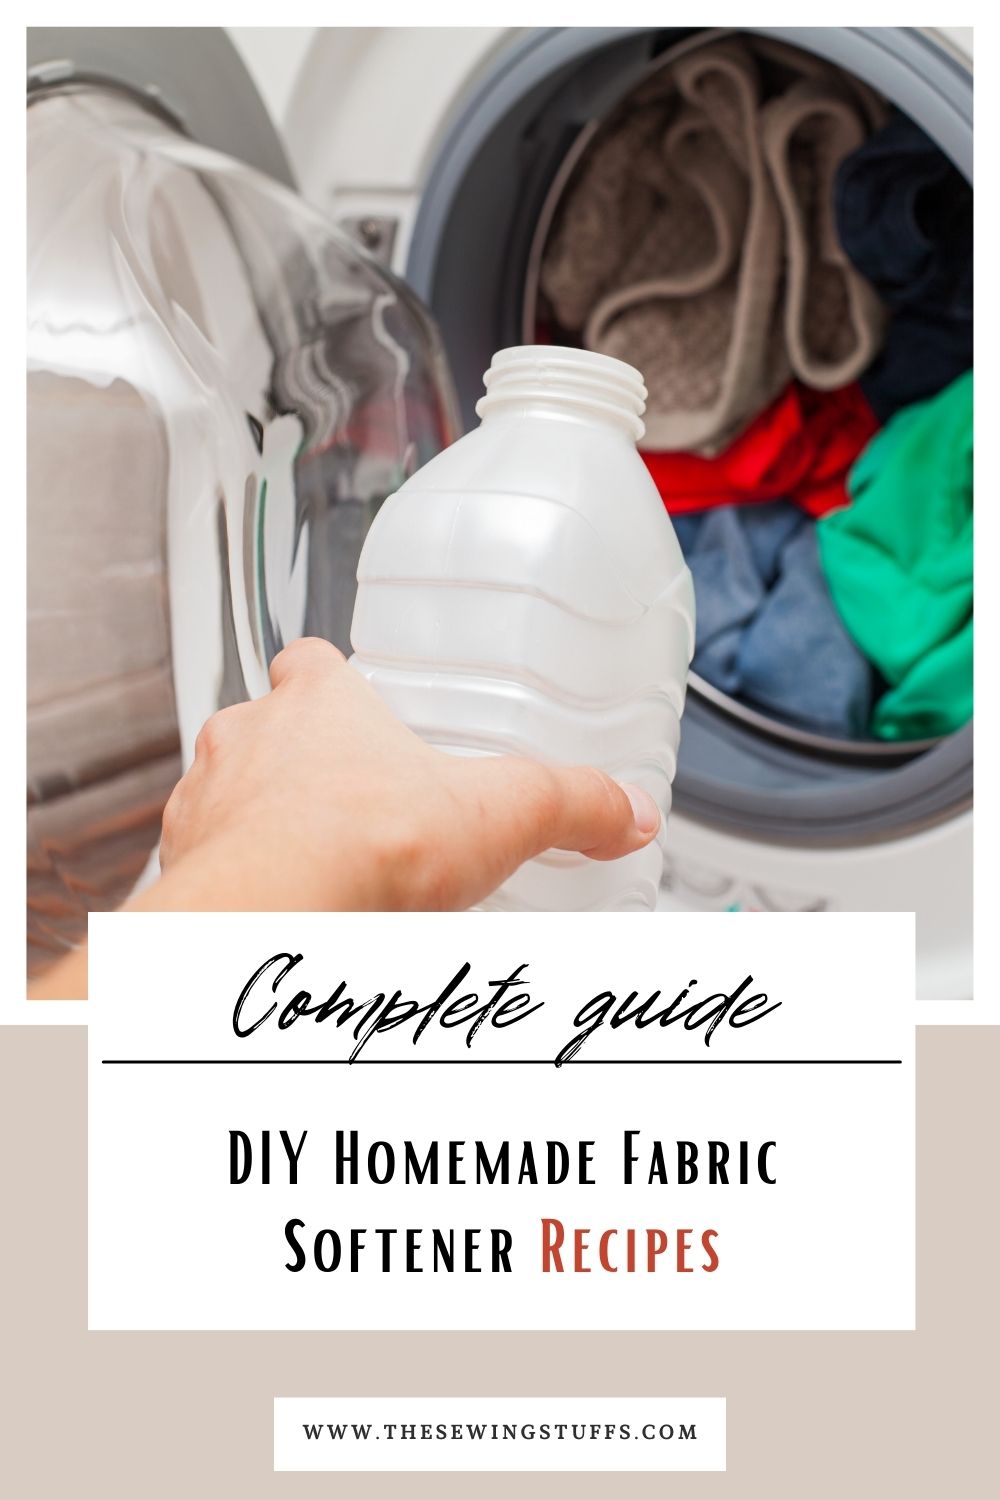 DIY Homemade Fabric Softener Recipes